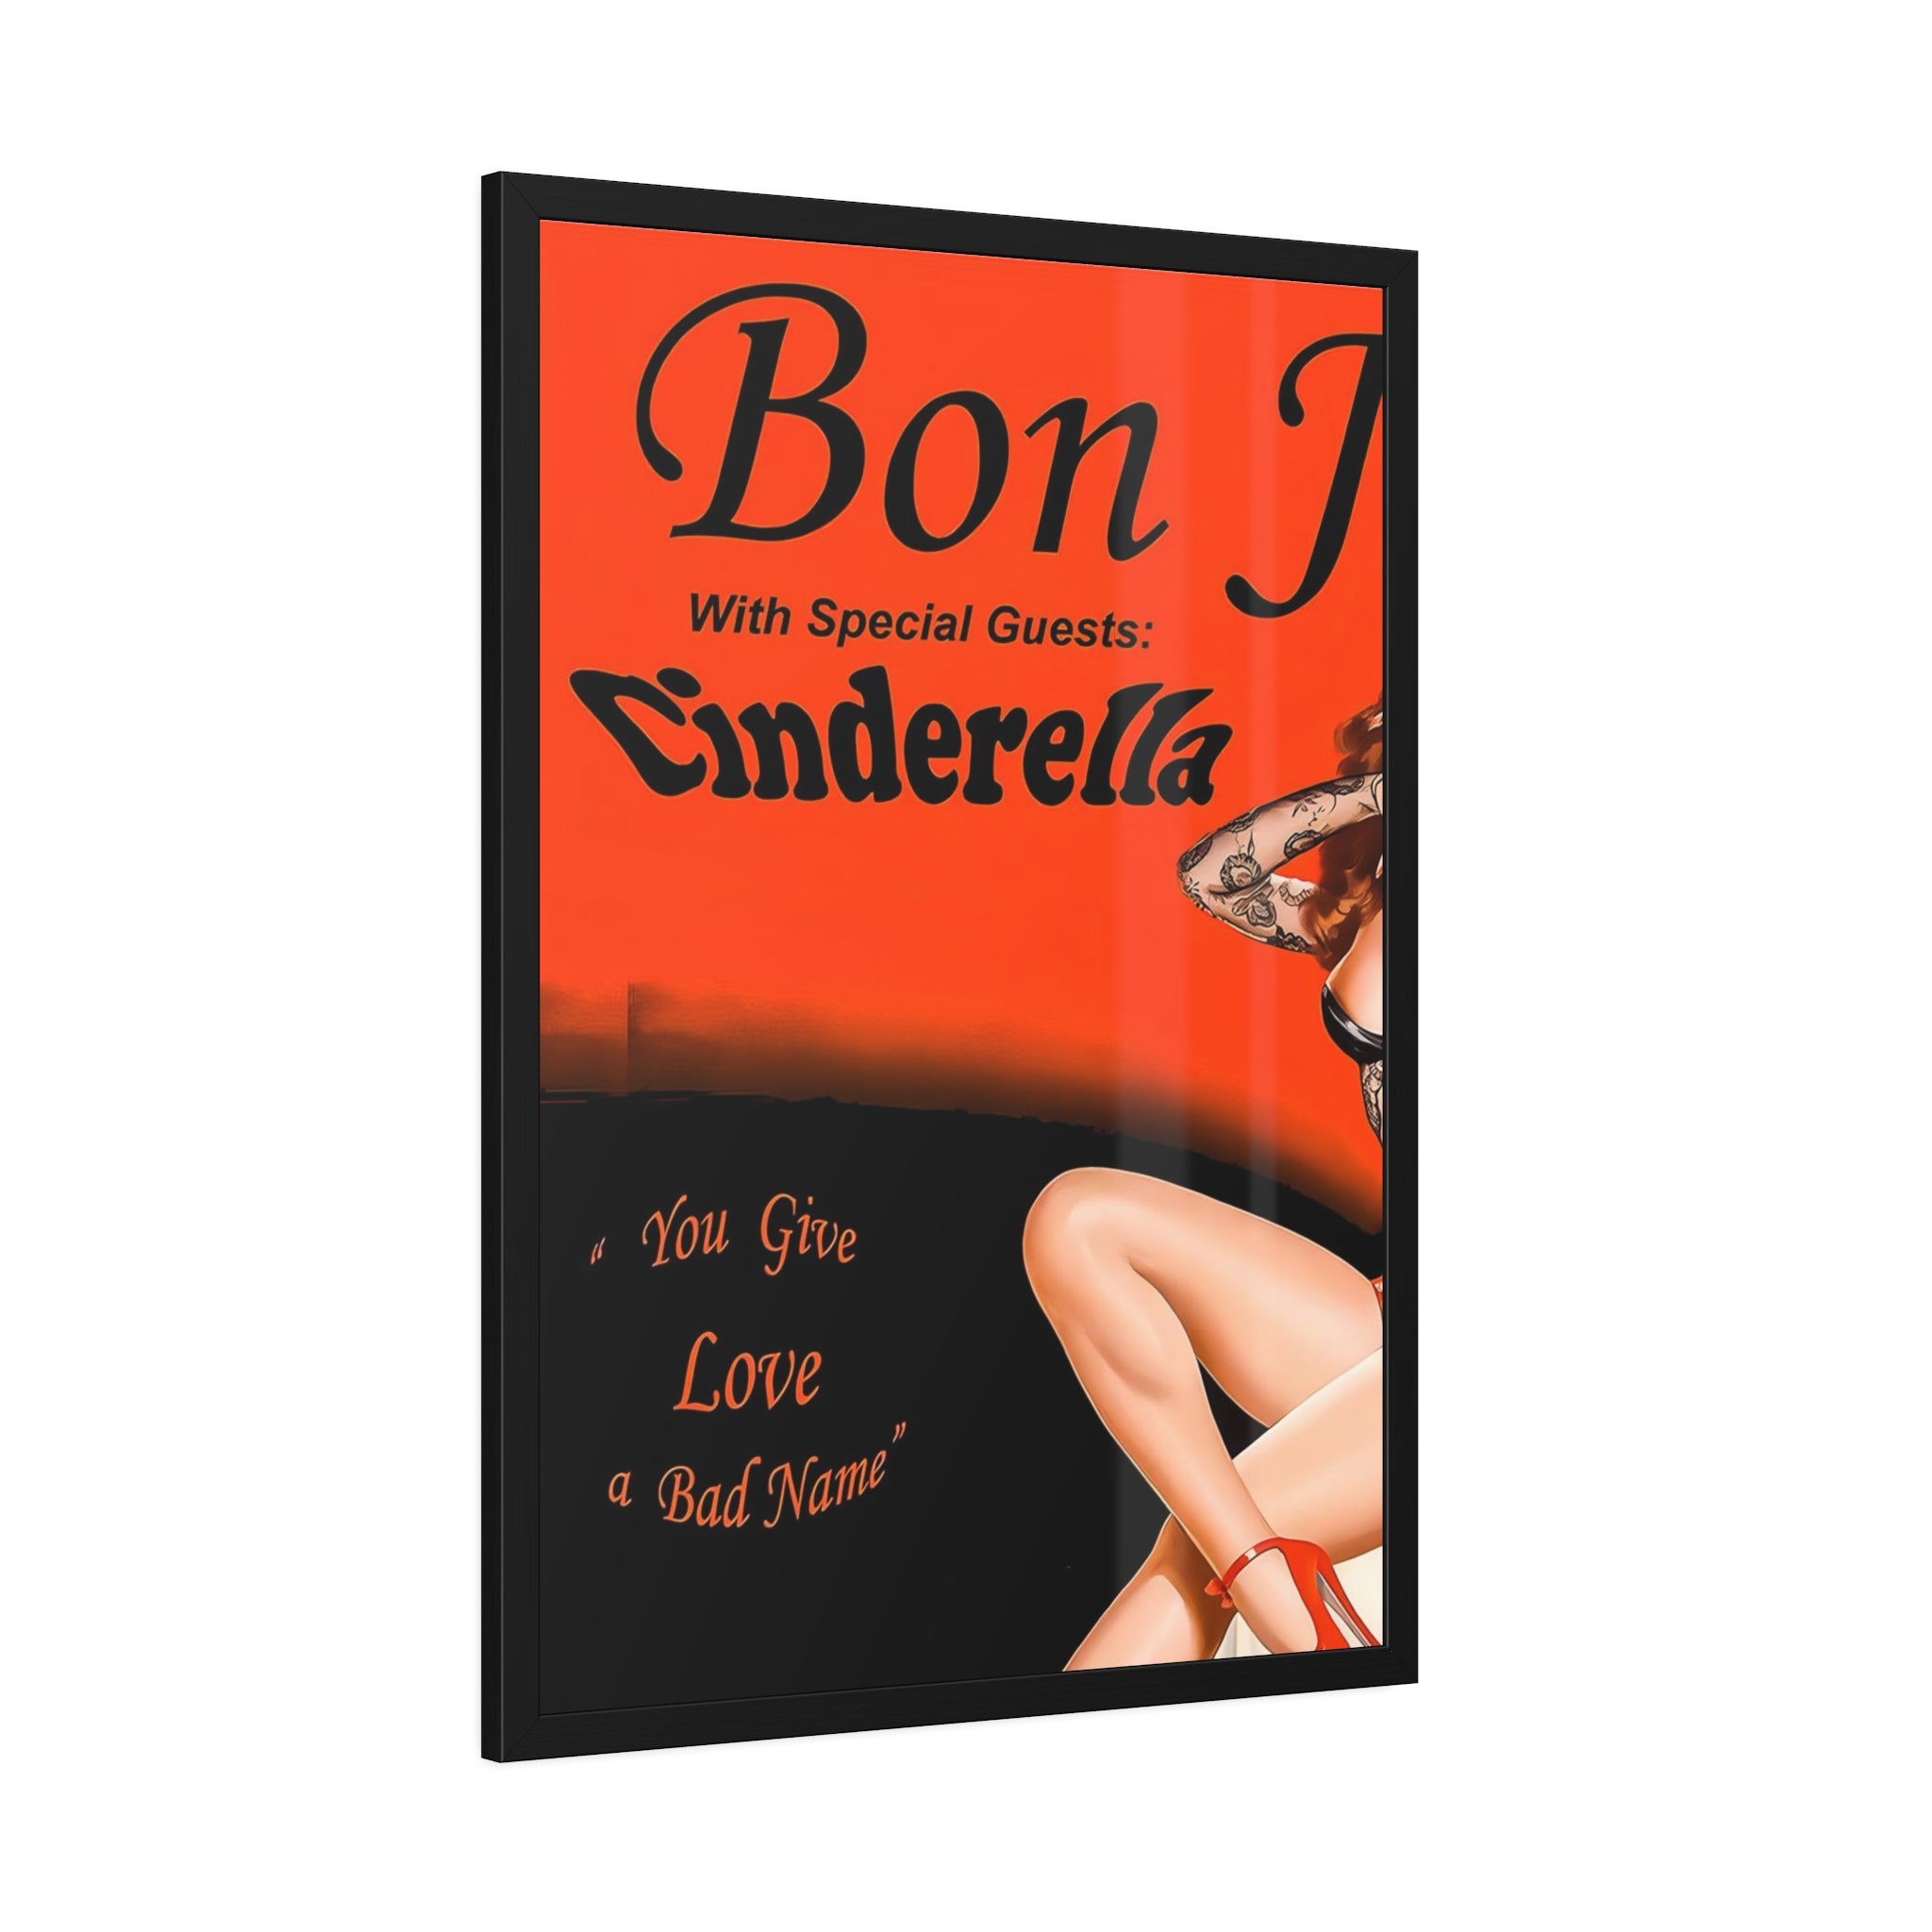 Bon Jovi Cinderella Concert Poster